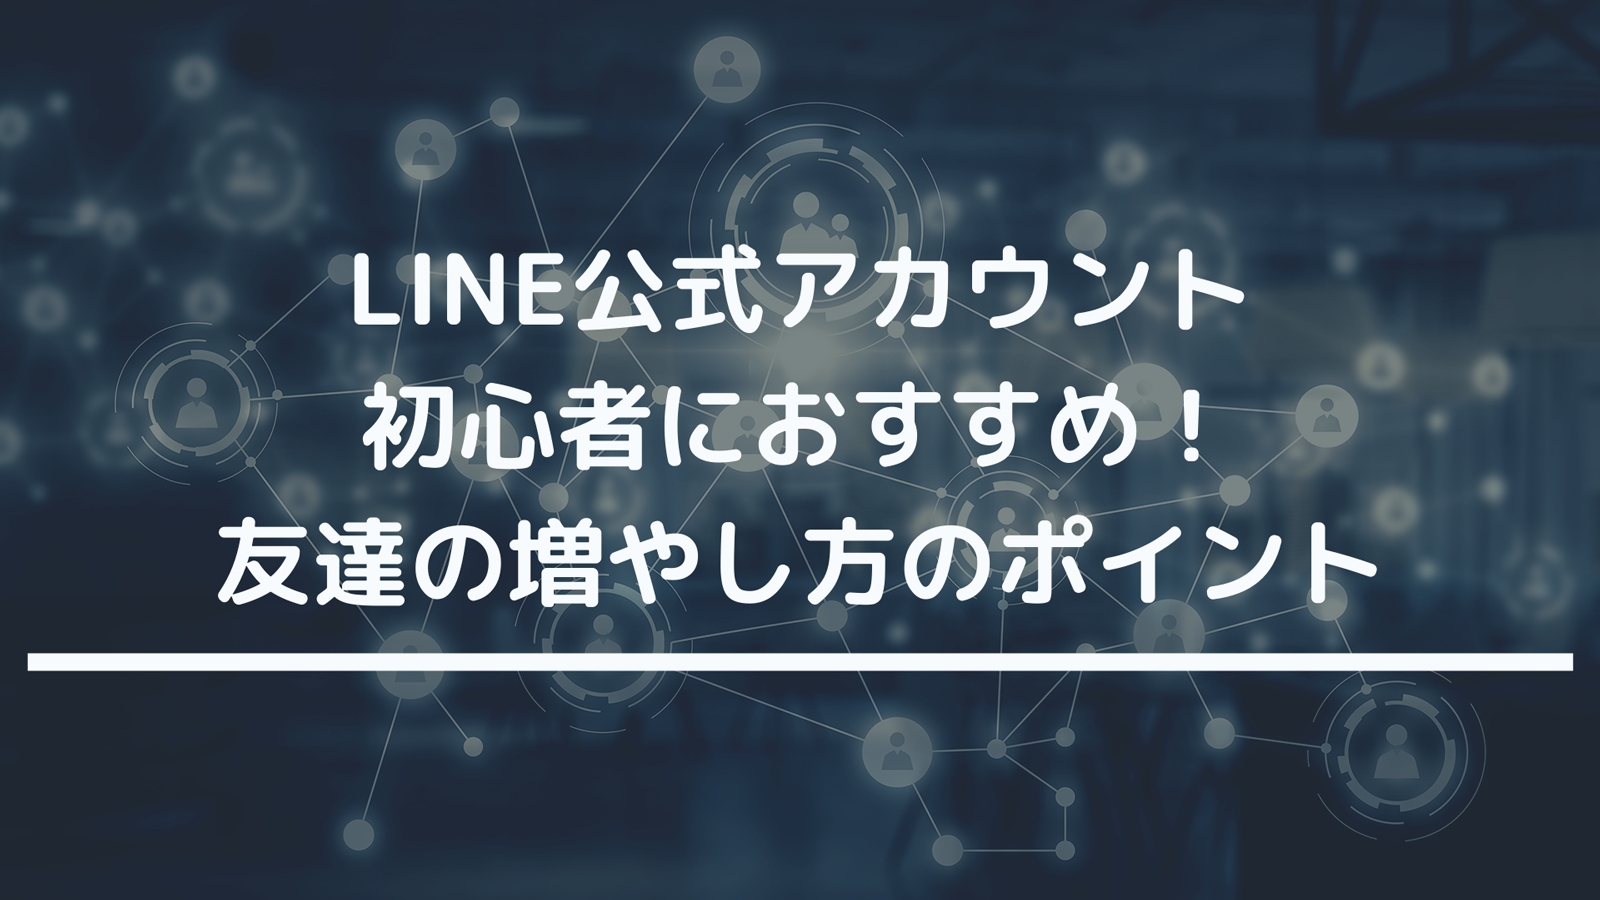 Line公式アカウント初心者におすすめ フォロワーの増やし方のポイント Spread Info Llc